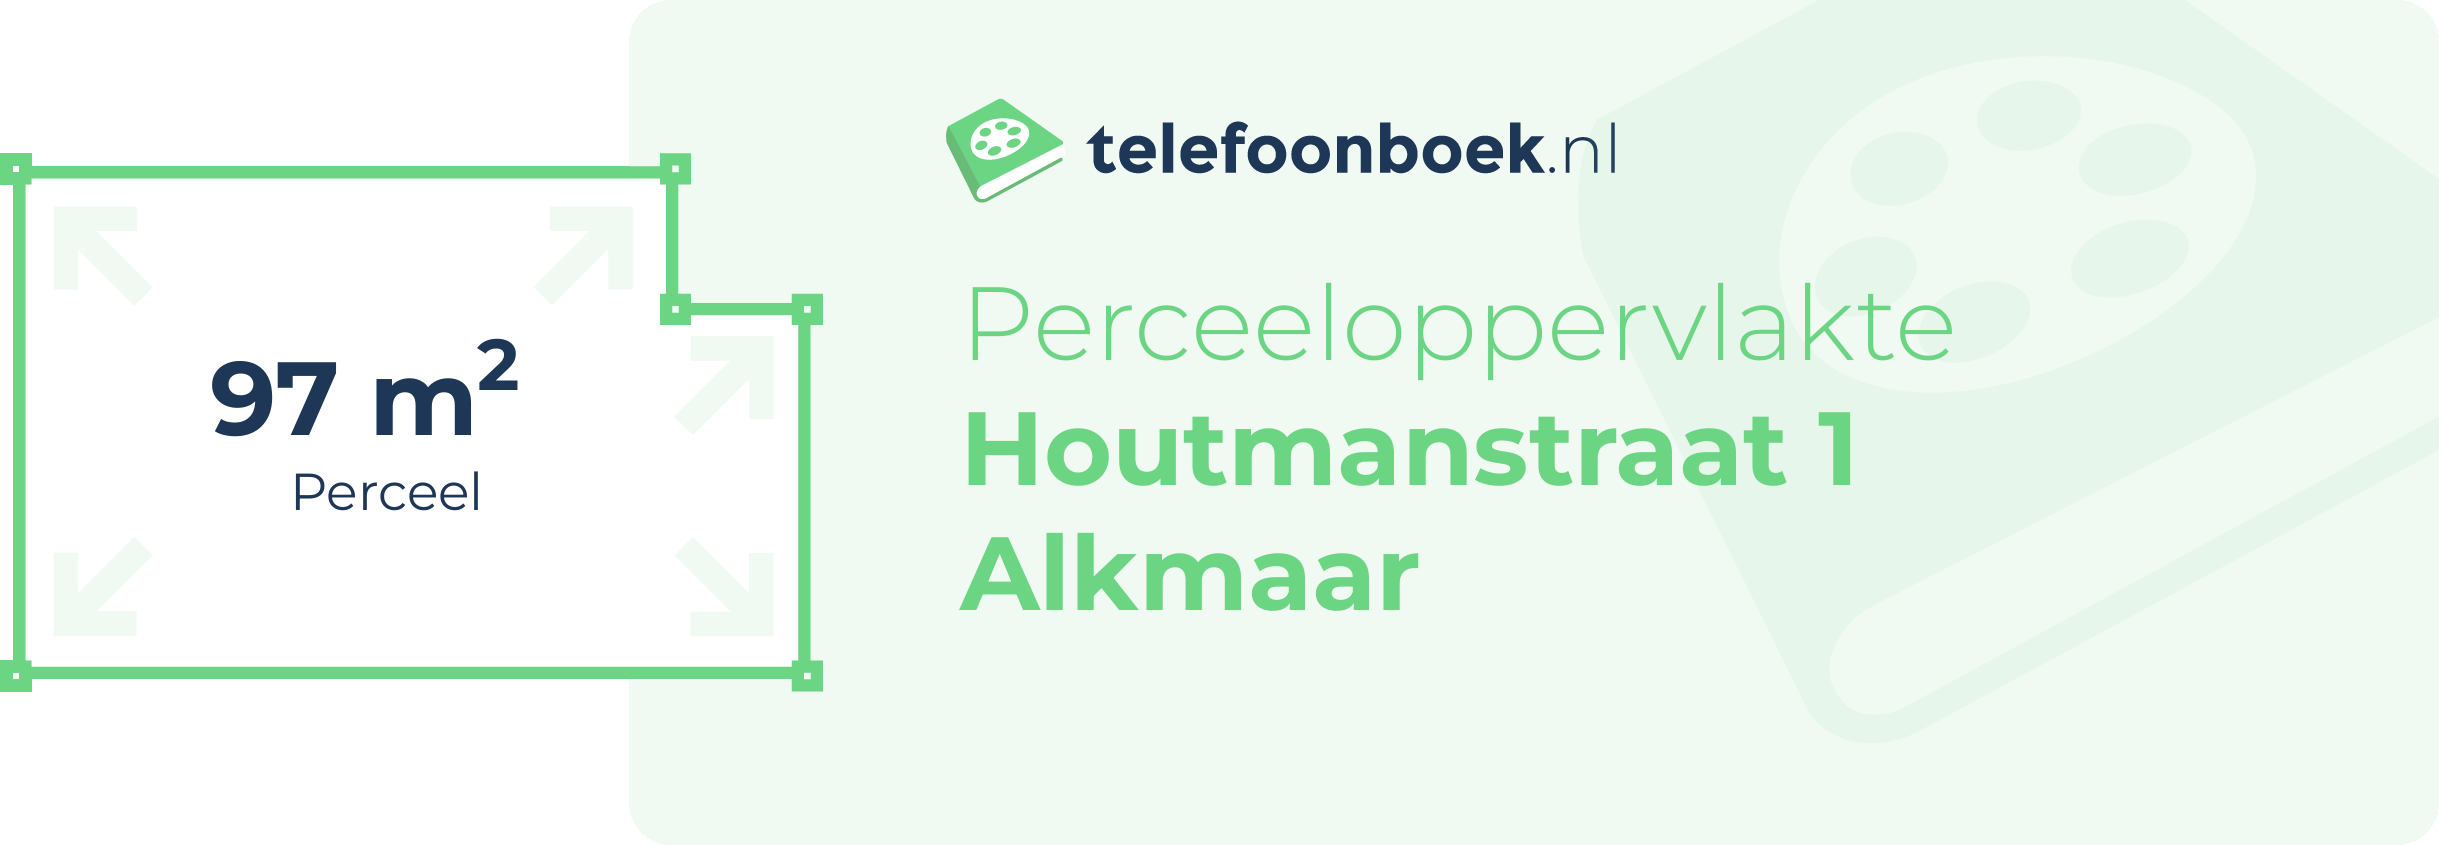 Perceeloppervlakte Houtmanstraat 1 Alkmaar